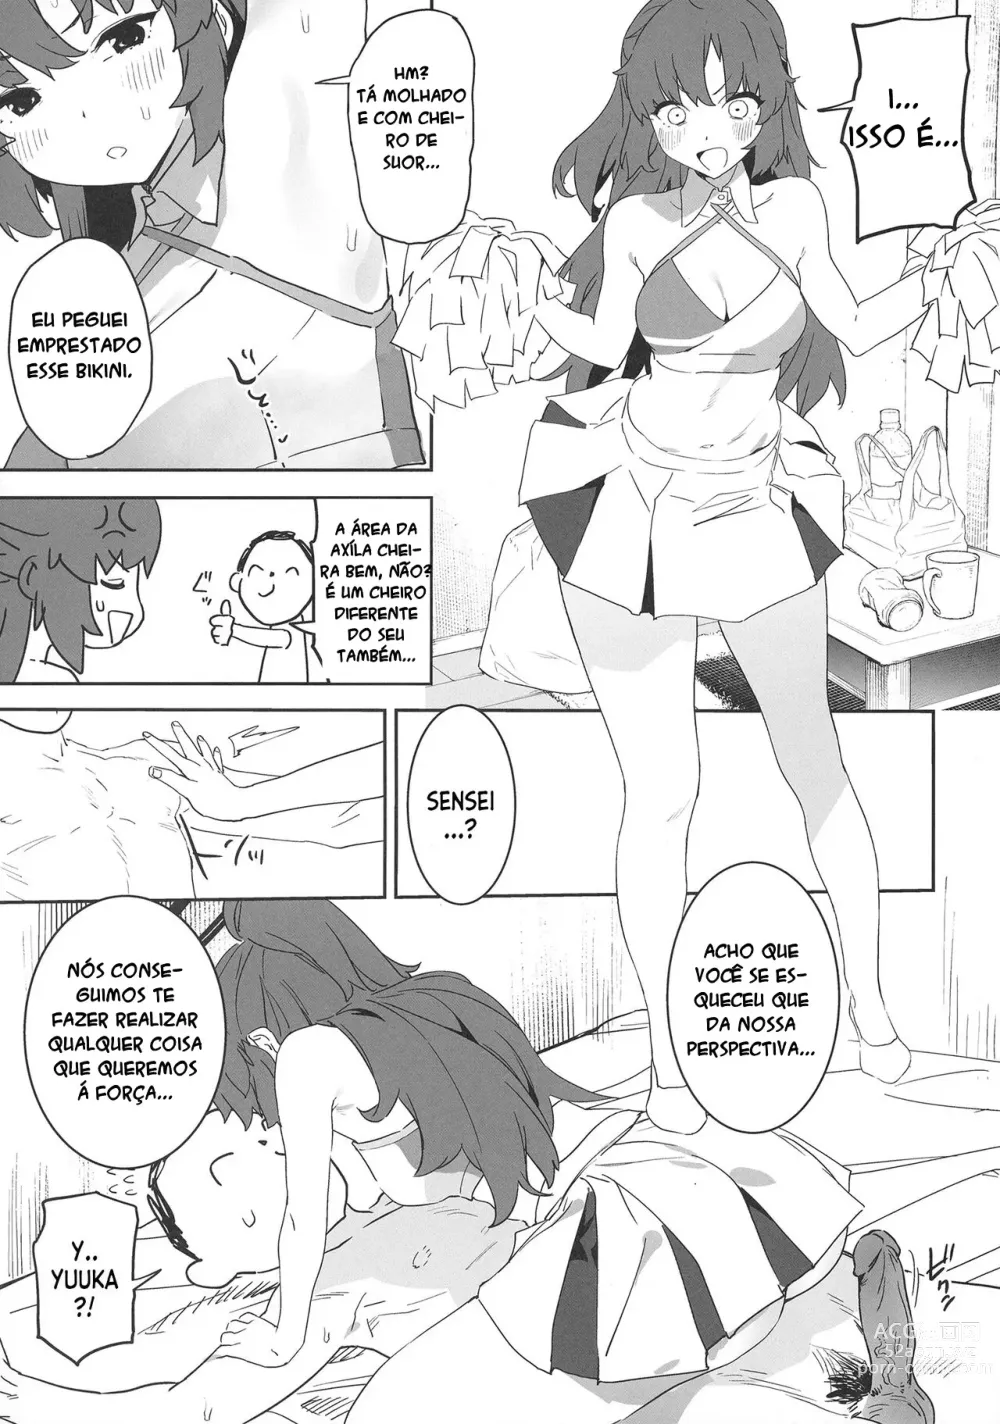 Page 19 of doujinshi Shimi Ase Yuuka no Mure Momo Manko